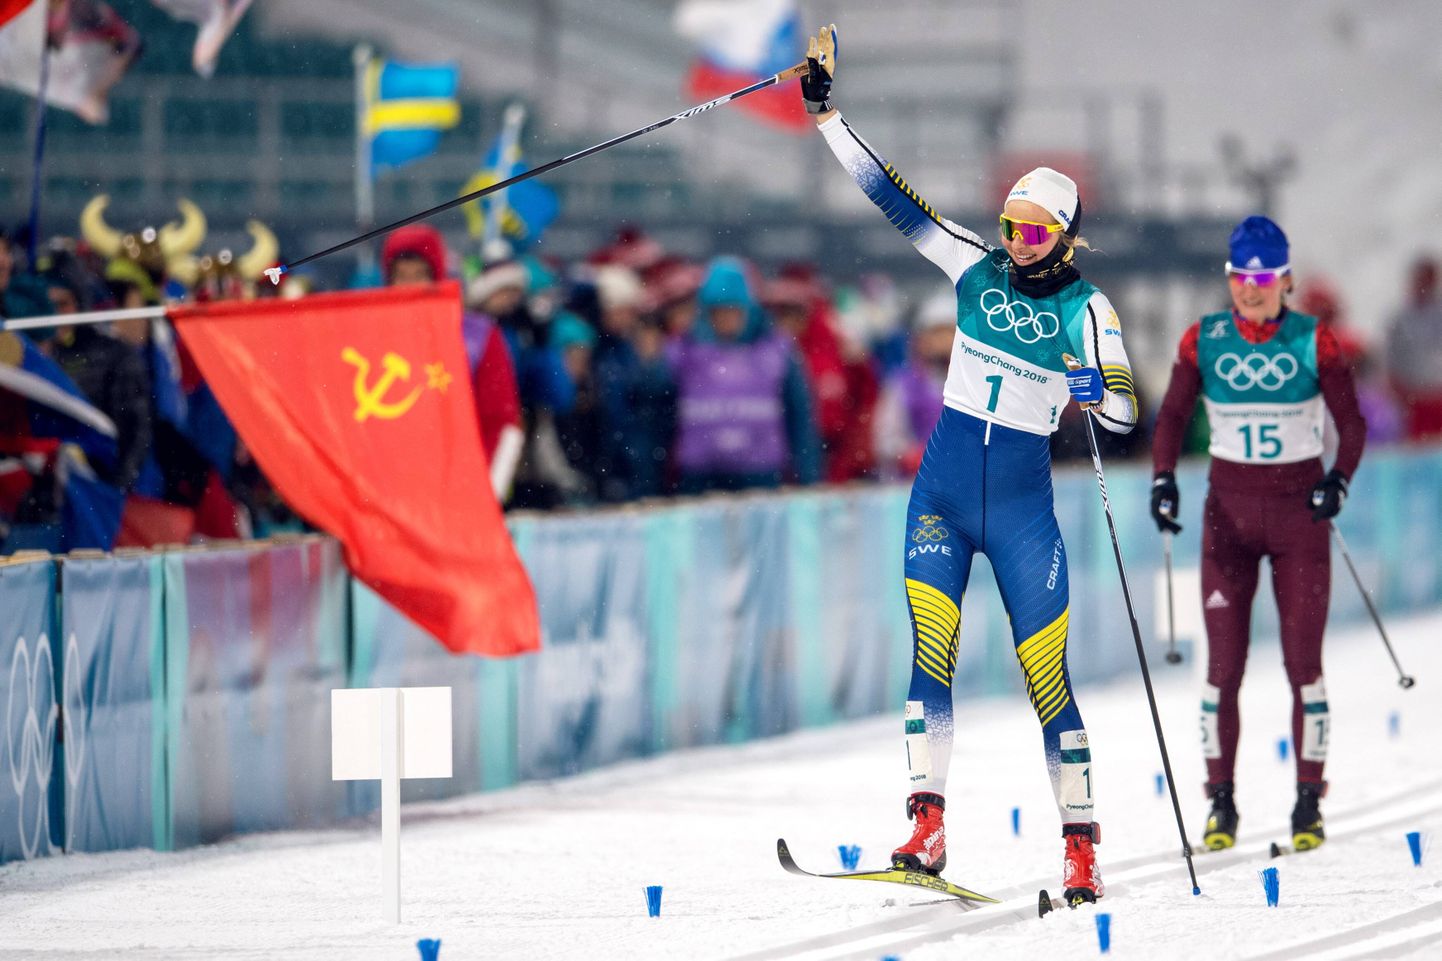 Sprindis kulla saanud Stina Nilsson lõpetas võidukalt... Nõukogude Liidu lipu lehvides.